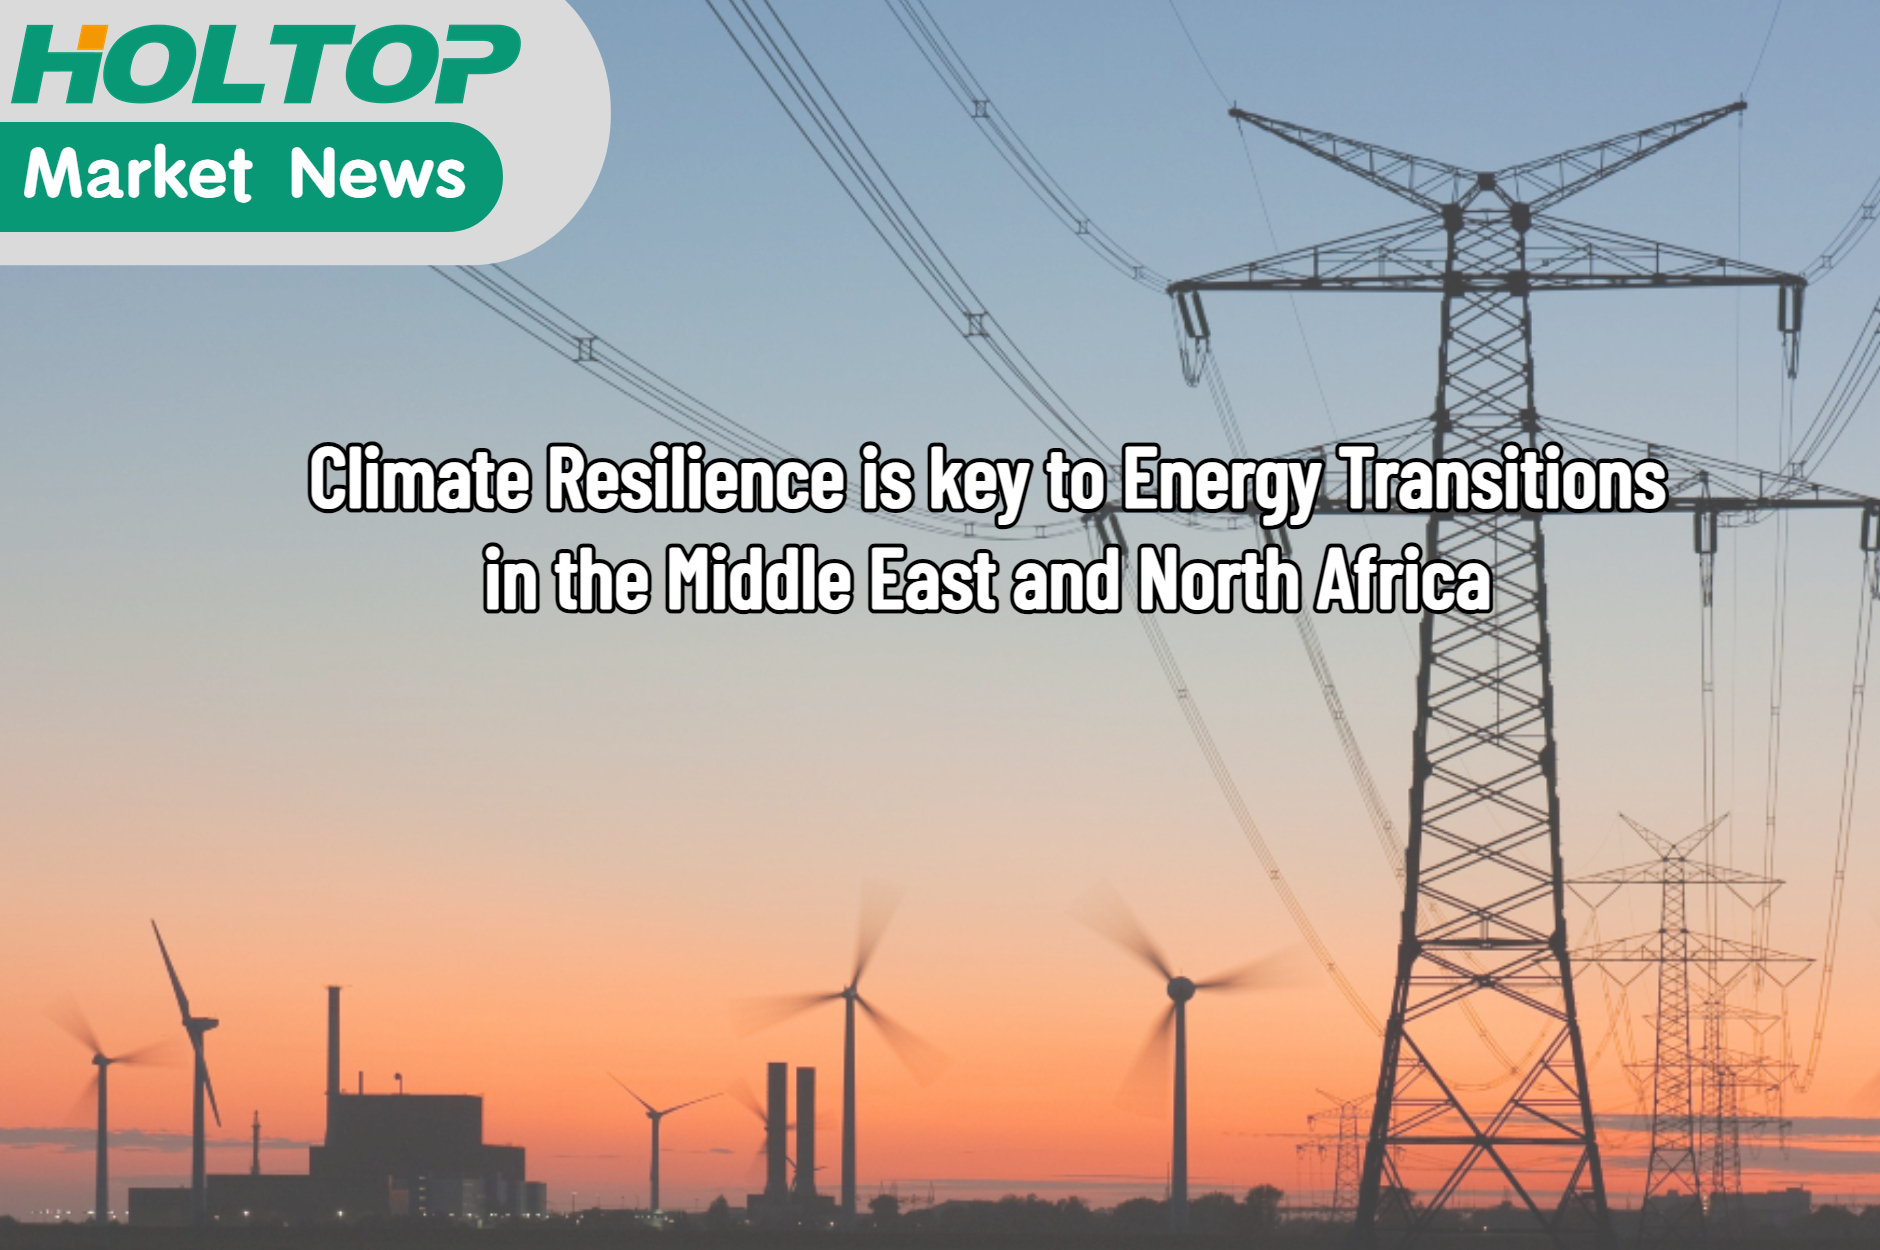 La résilience climatique est la clé des transitions énergétiques dans la région MENA